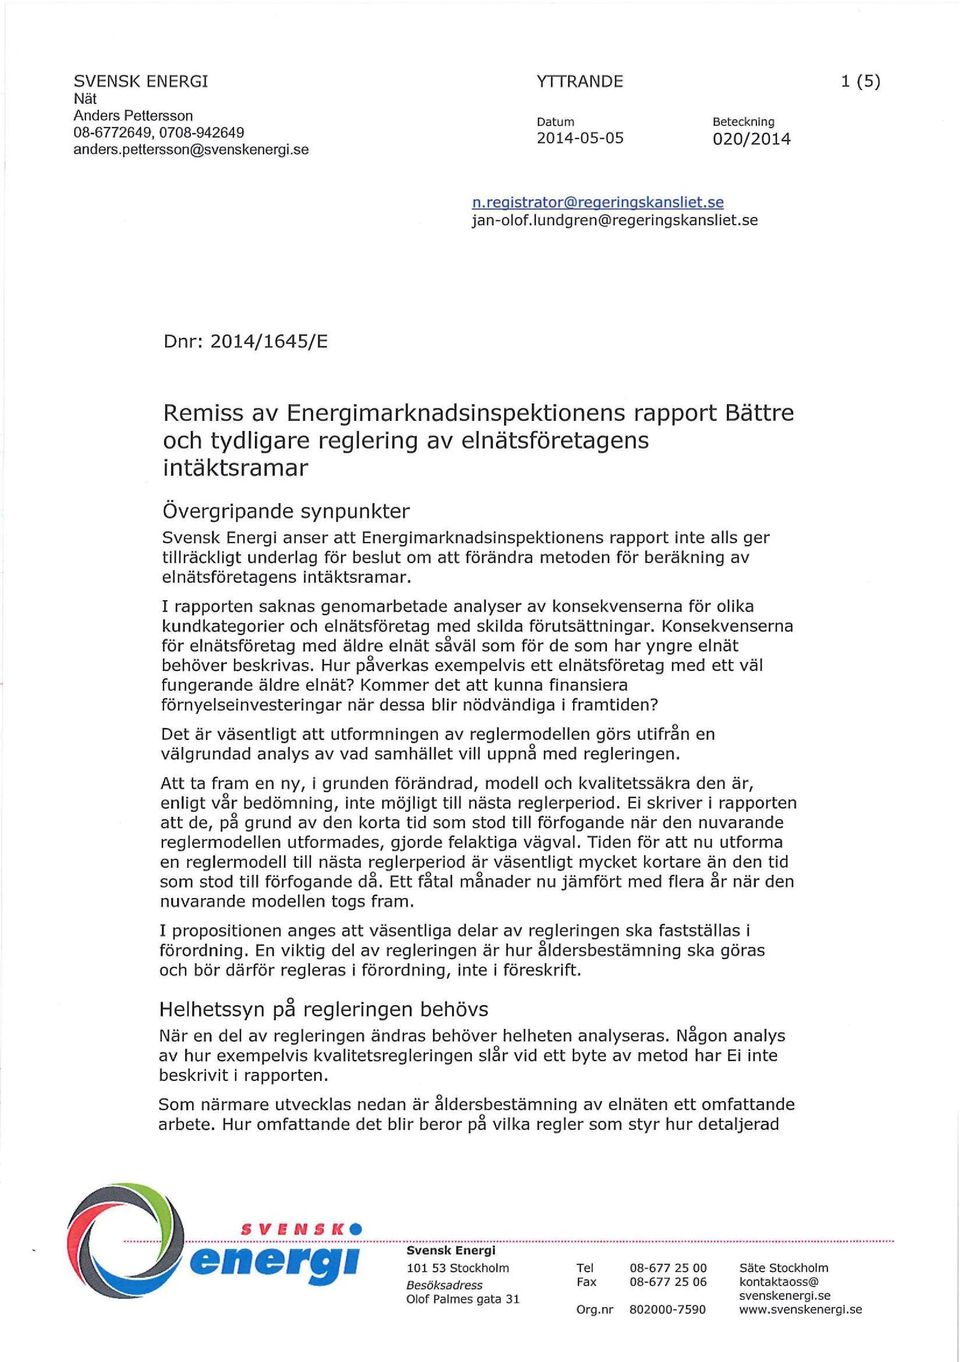 se Dnr: 2014/1645/E Remiss av Energimarknadsinspektionens rapport Bättre och tydligare reglering av elnätsföretagens intäktsramar Övergripande synpunkter Svensk Energi anser att